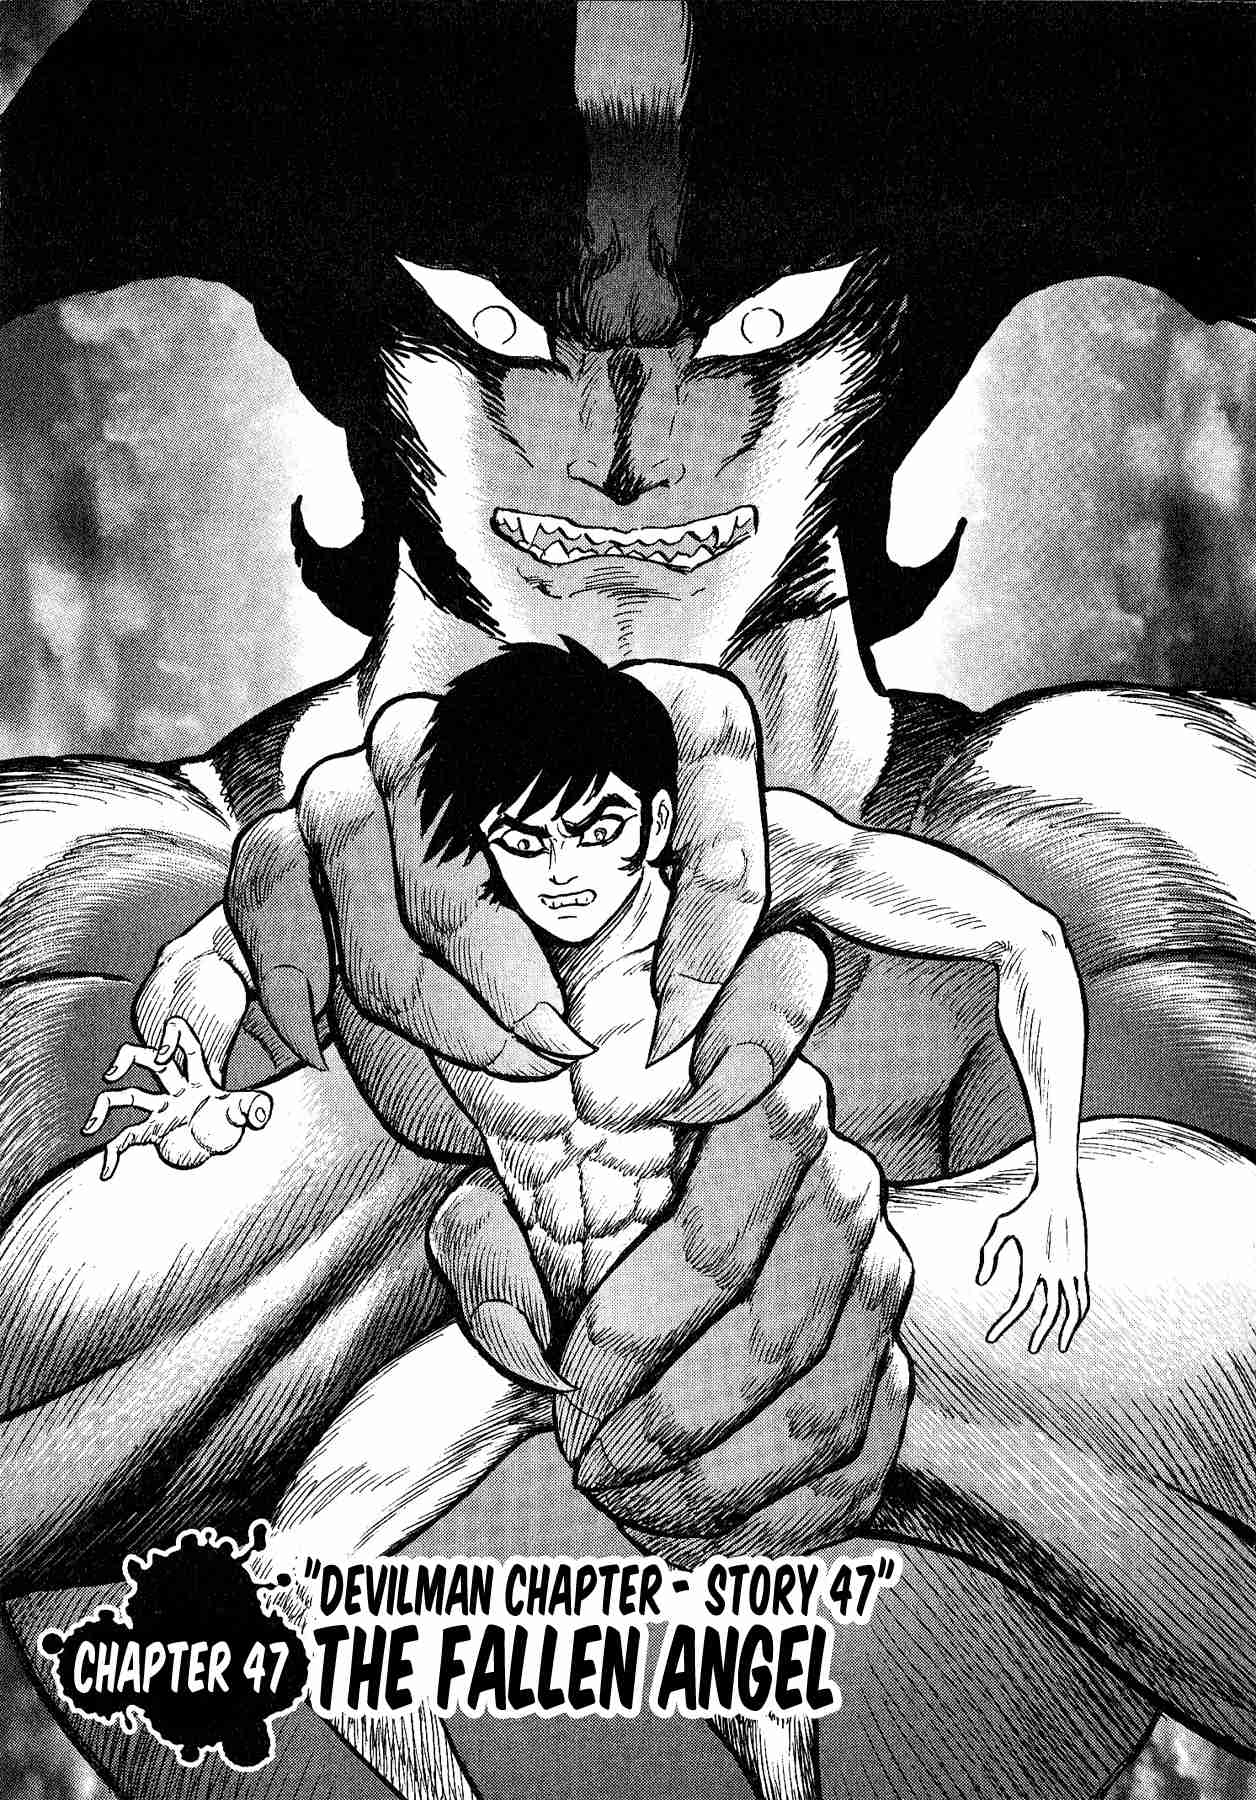 Gekiman! Devilman Chapter Vol. 6 Ch. 47 The Fallen Angel